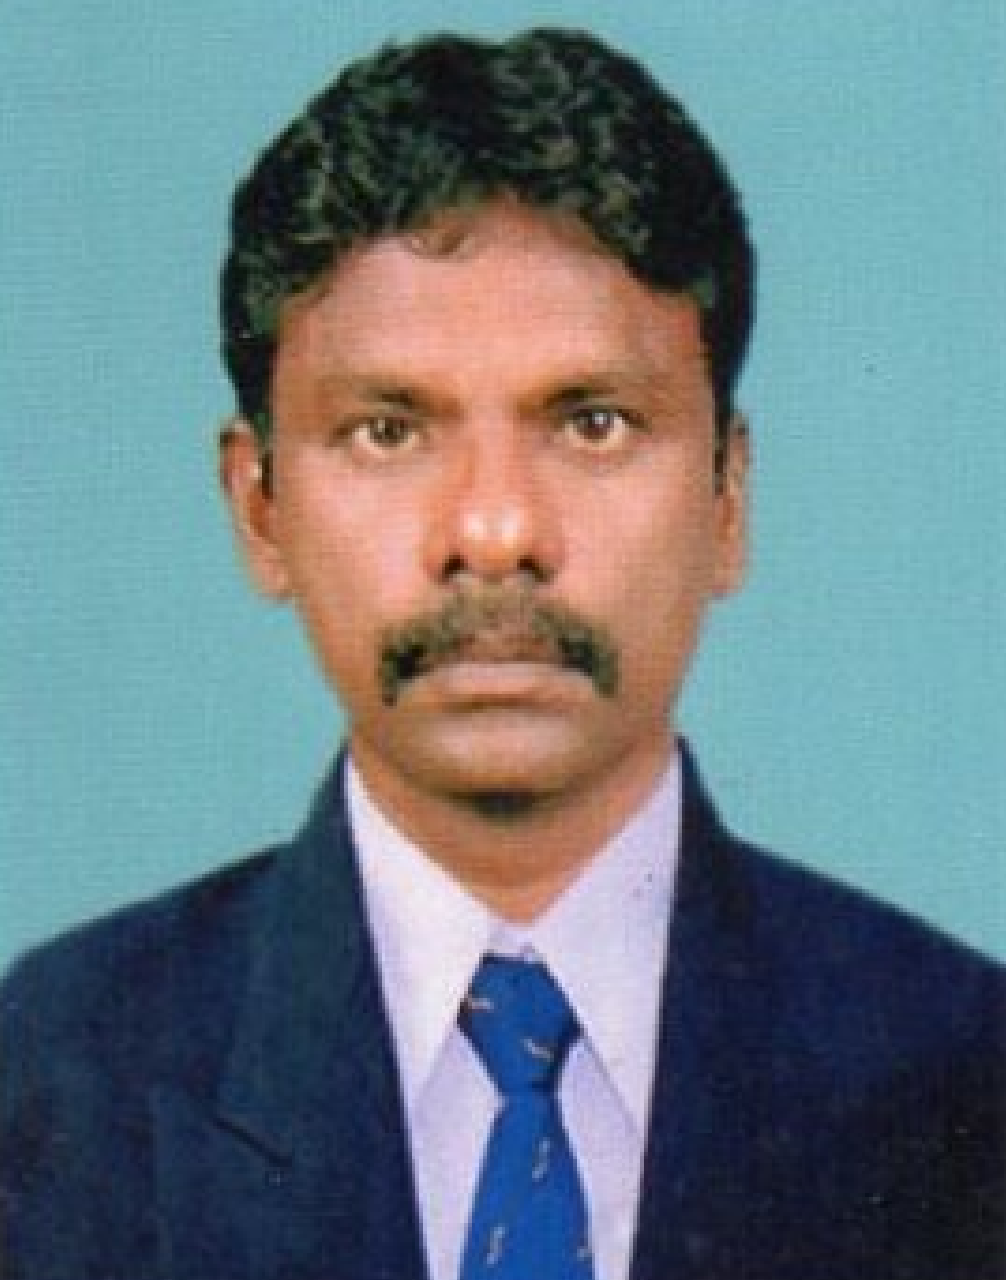 Mr Thirumaran